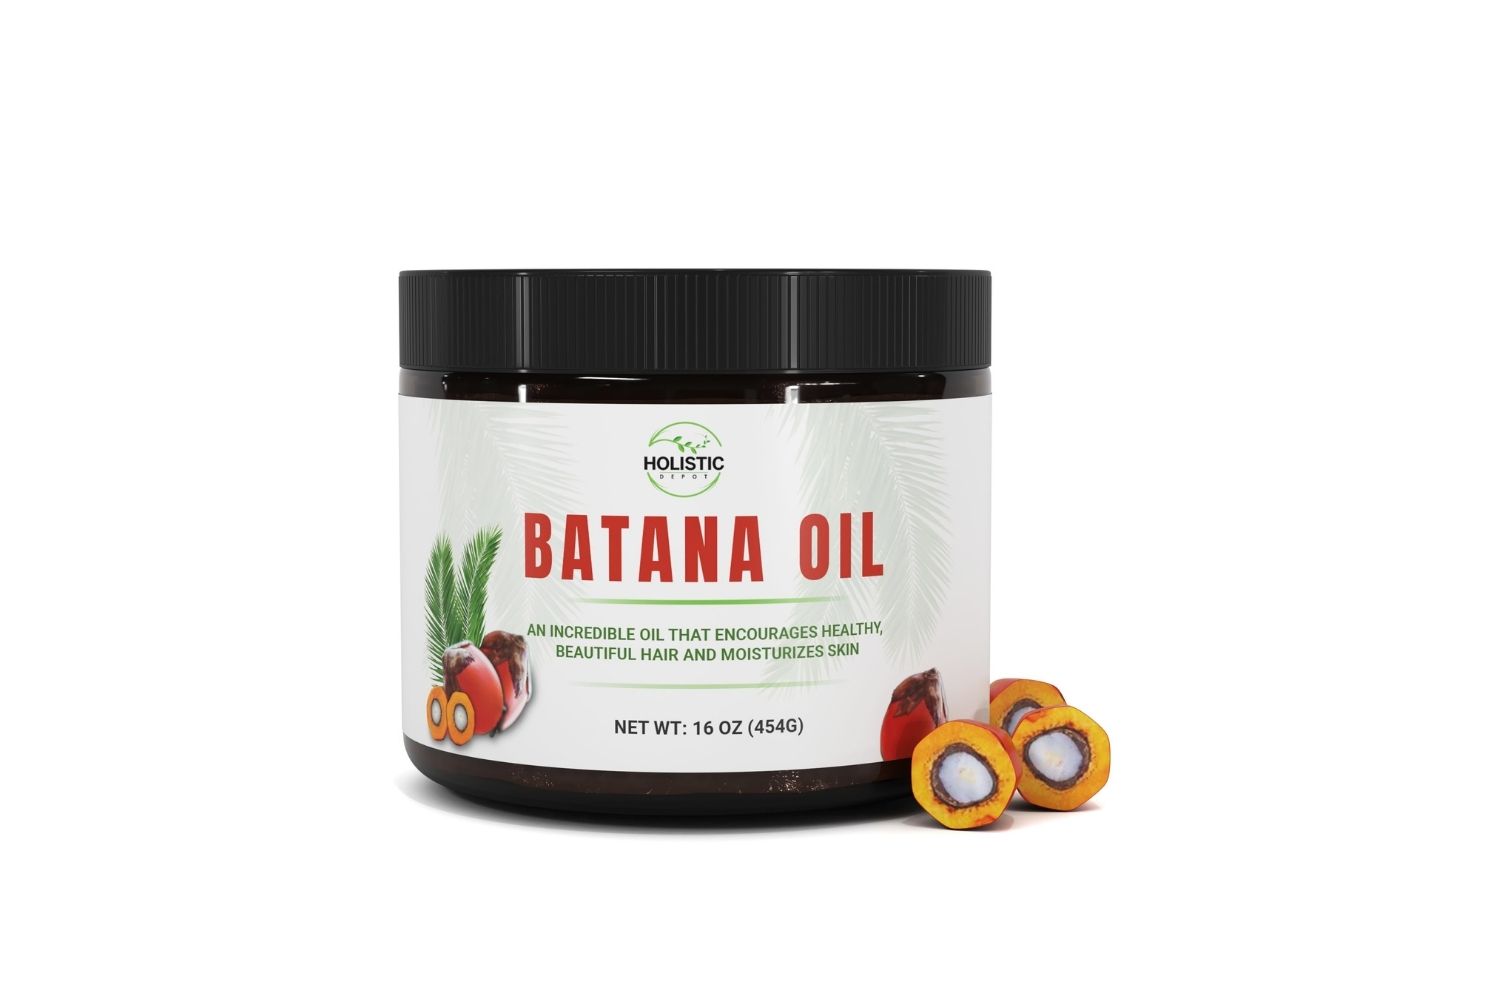 20-astounding-facts-about-batana-oil